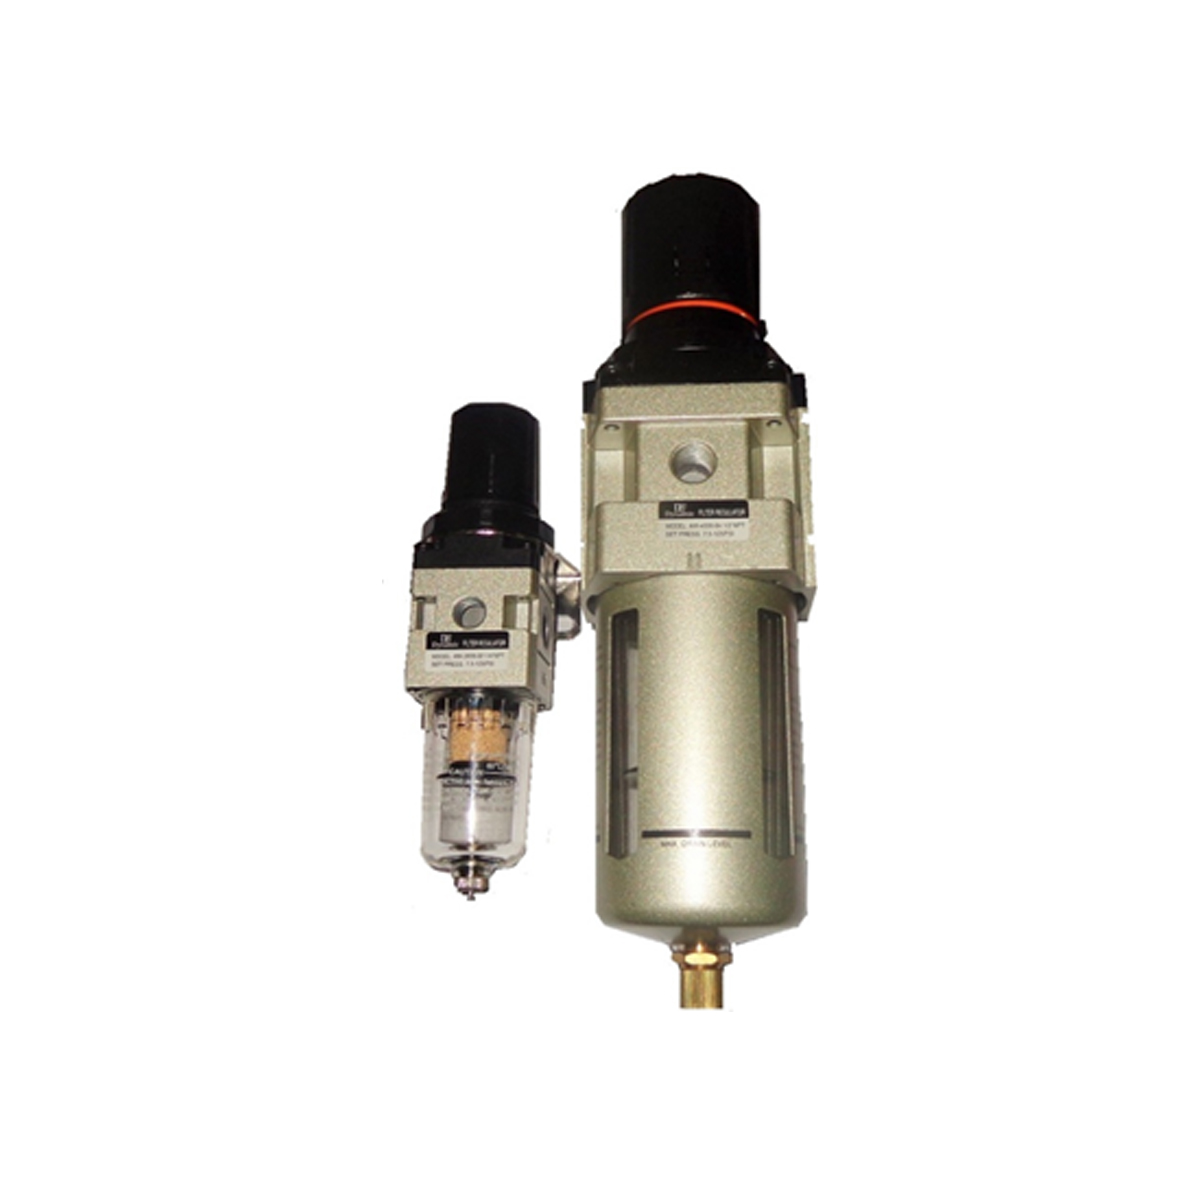 Filter-filtro reductor de presión regulador para Pneumatik aire comprimido 1/2" 